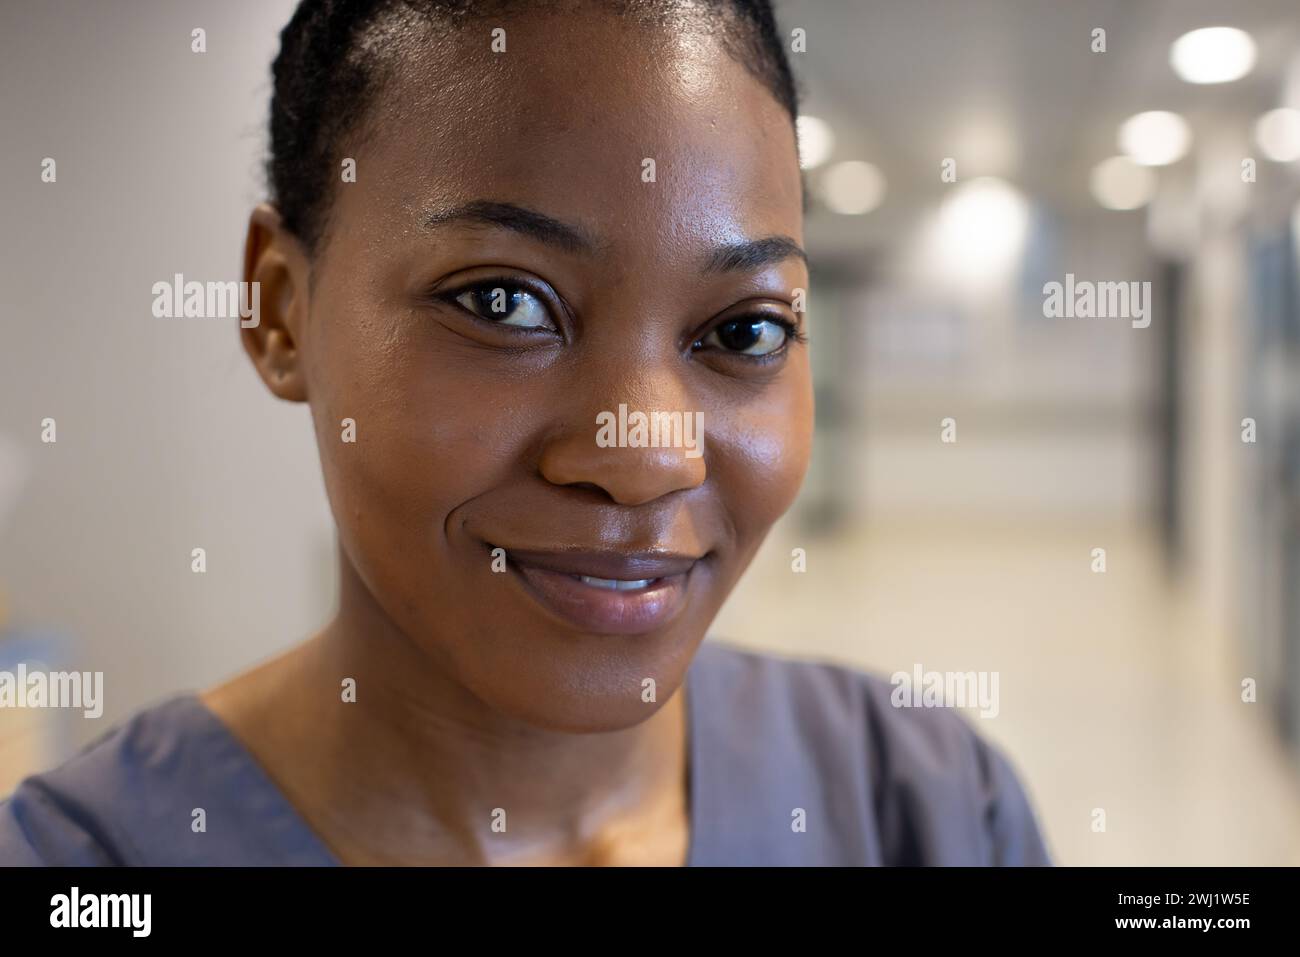 Ritratto di felice medico afroamericano in corridoio ospedaliero Foto Stock